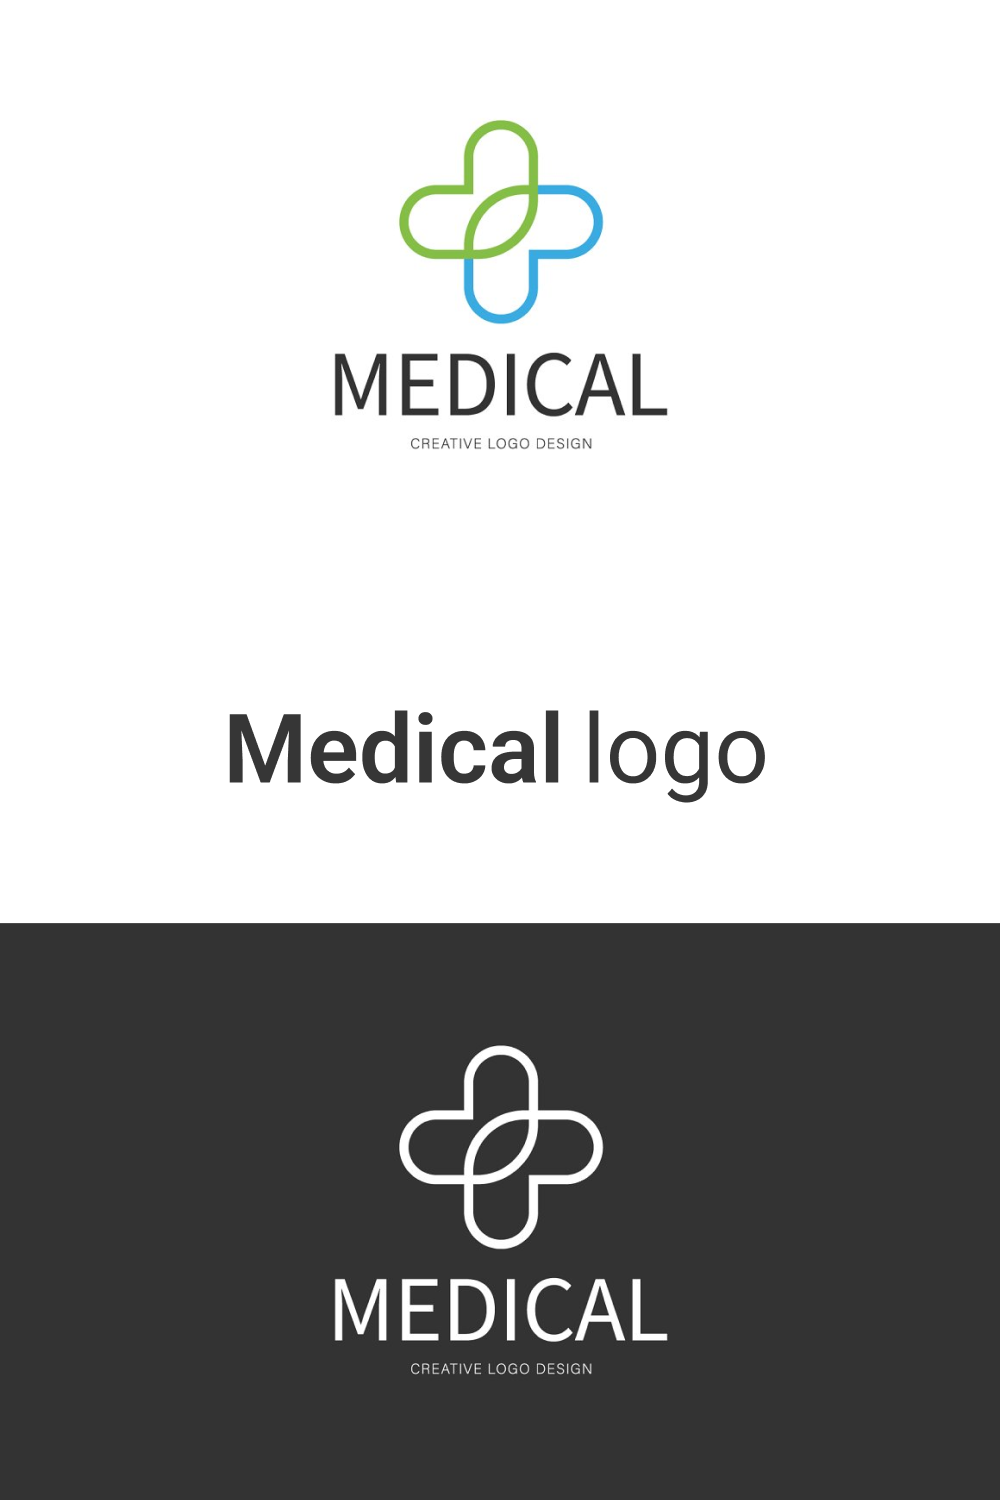 Medical logo for you.